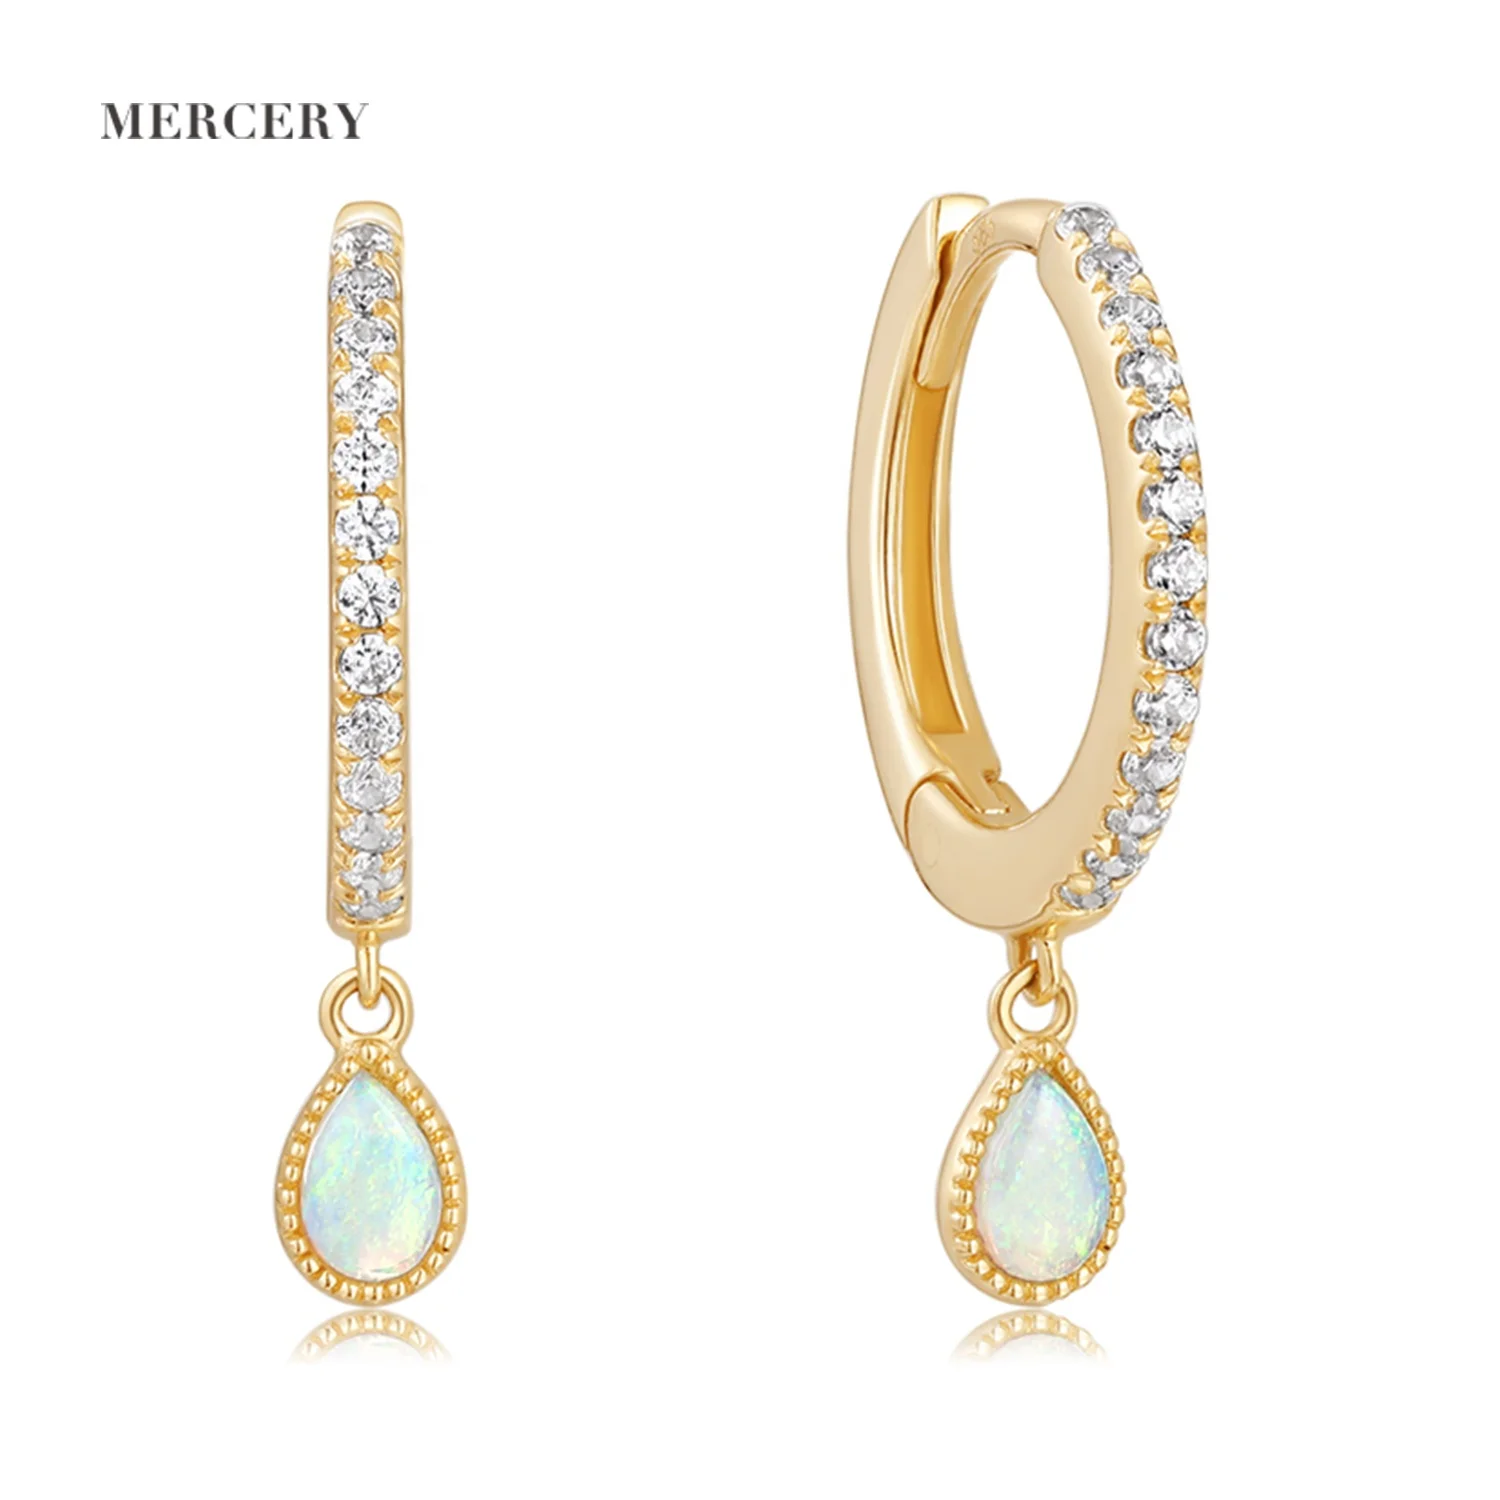 

Mercery Charms Jewelry Dangle Earring GH-SI Diamond 14k Solid Gold Australian Opal Water Drop Huggie Earrings For Women